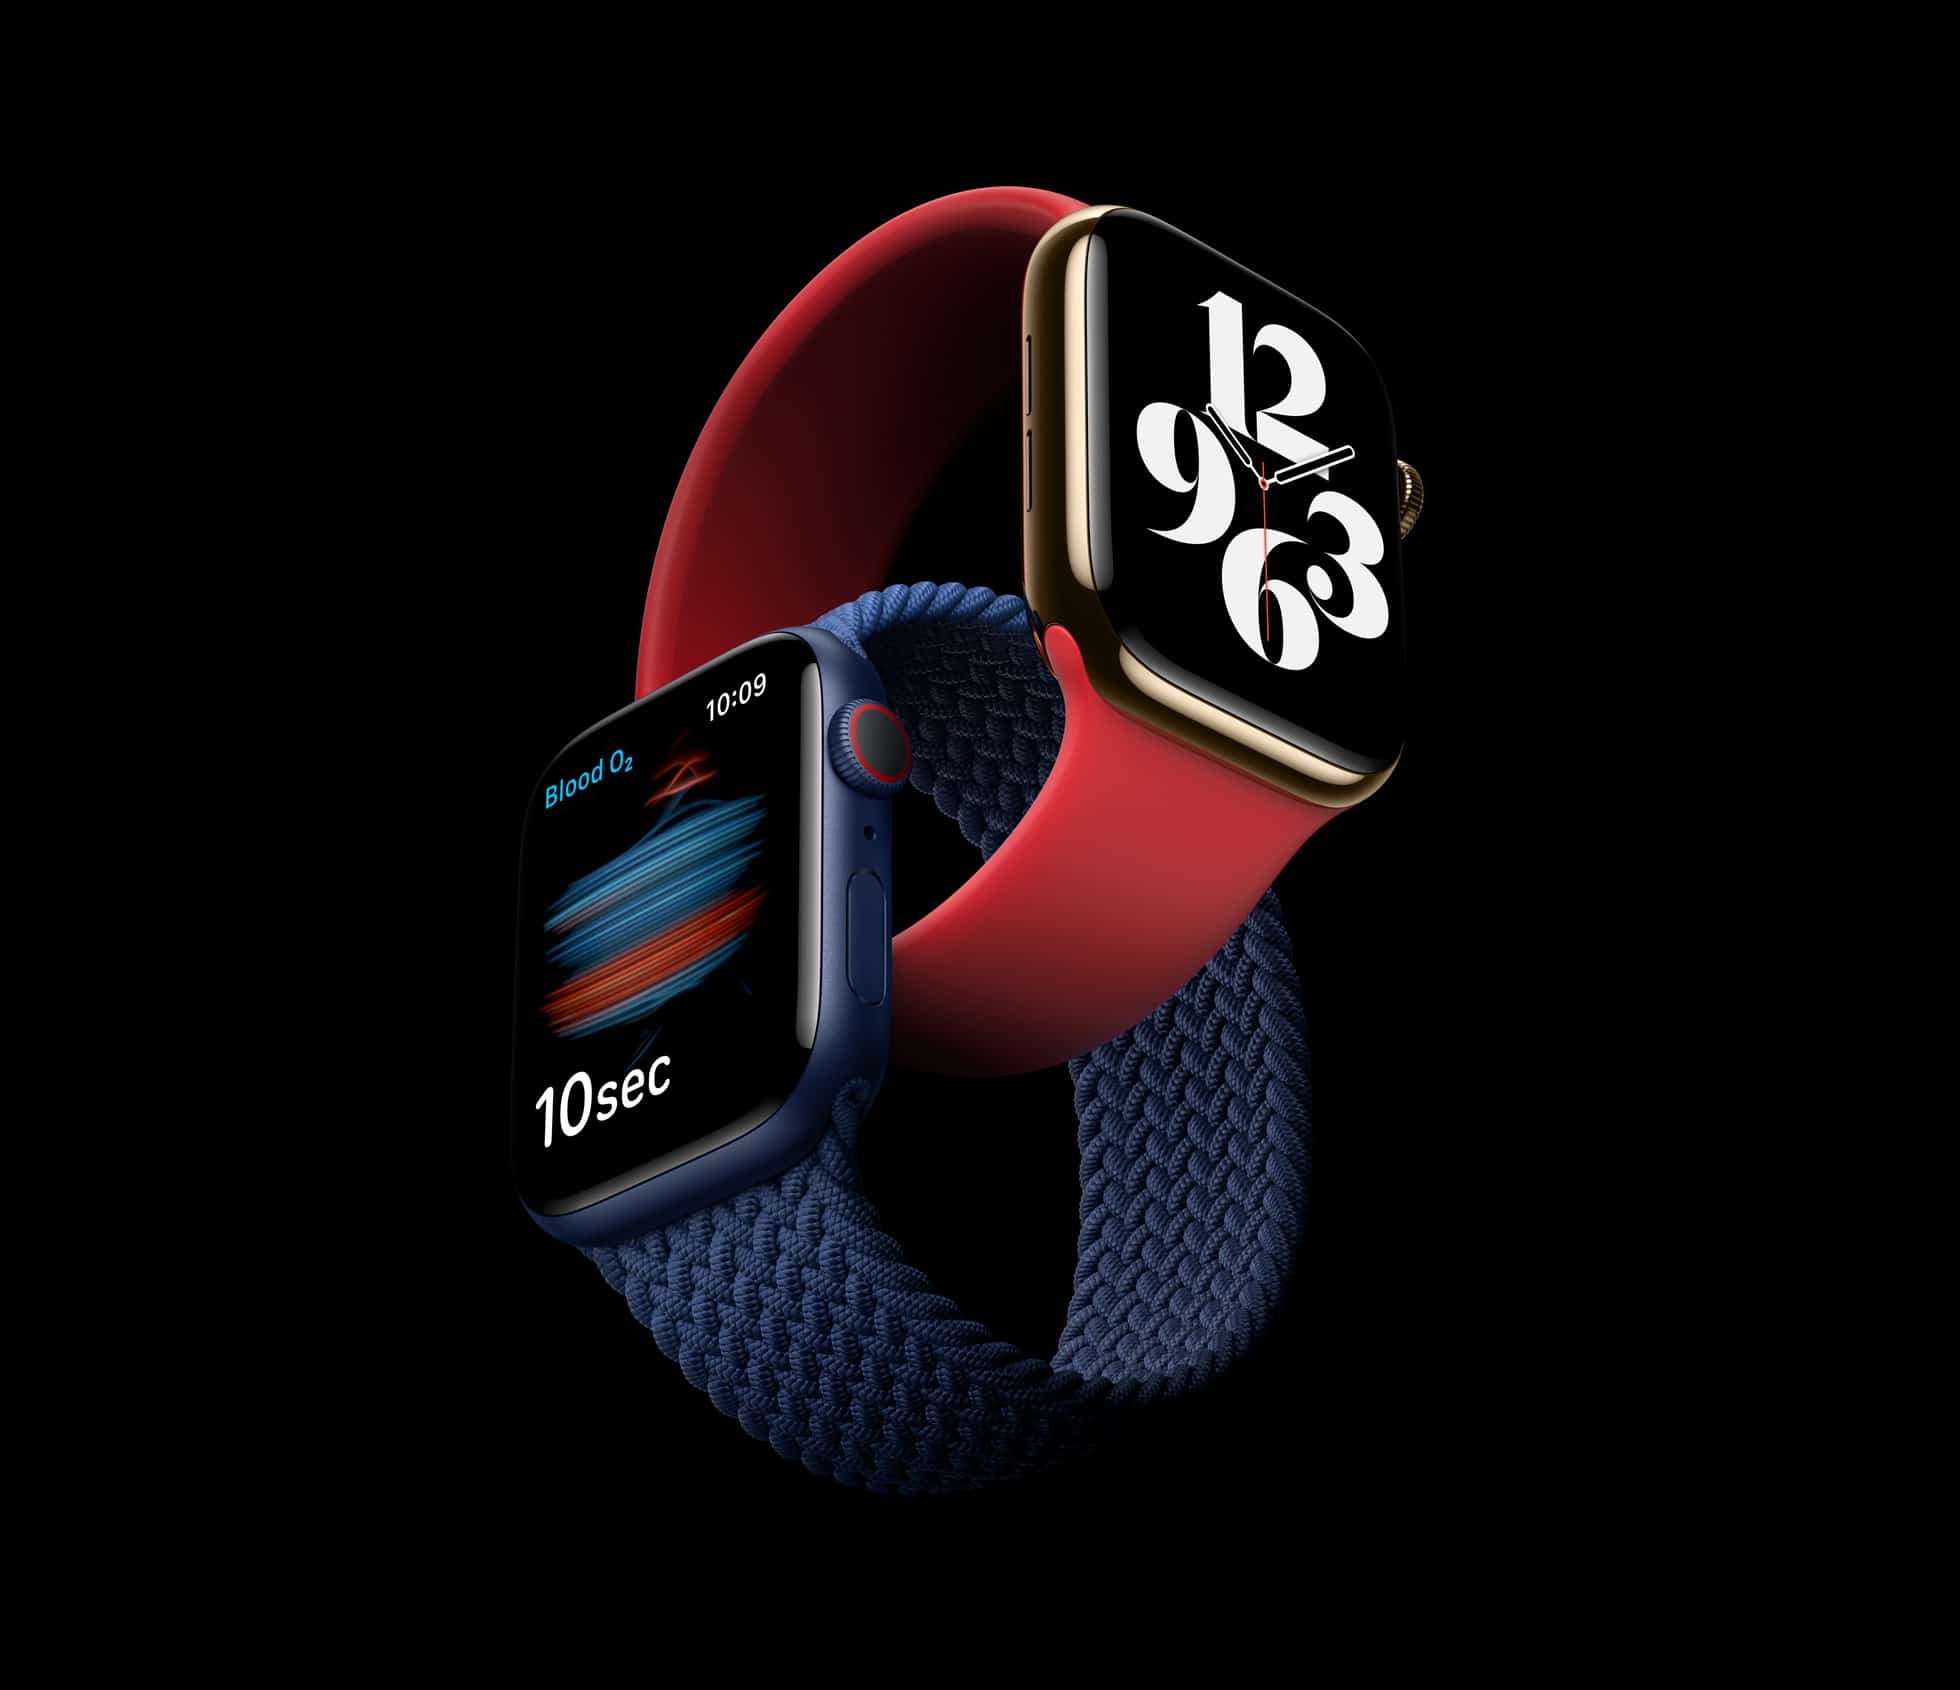 Apple giữ vị trí dẫn đầu thị trường smartwatch toàn cầu trong quý IV năm 2020